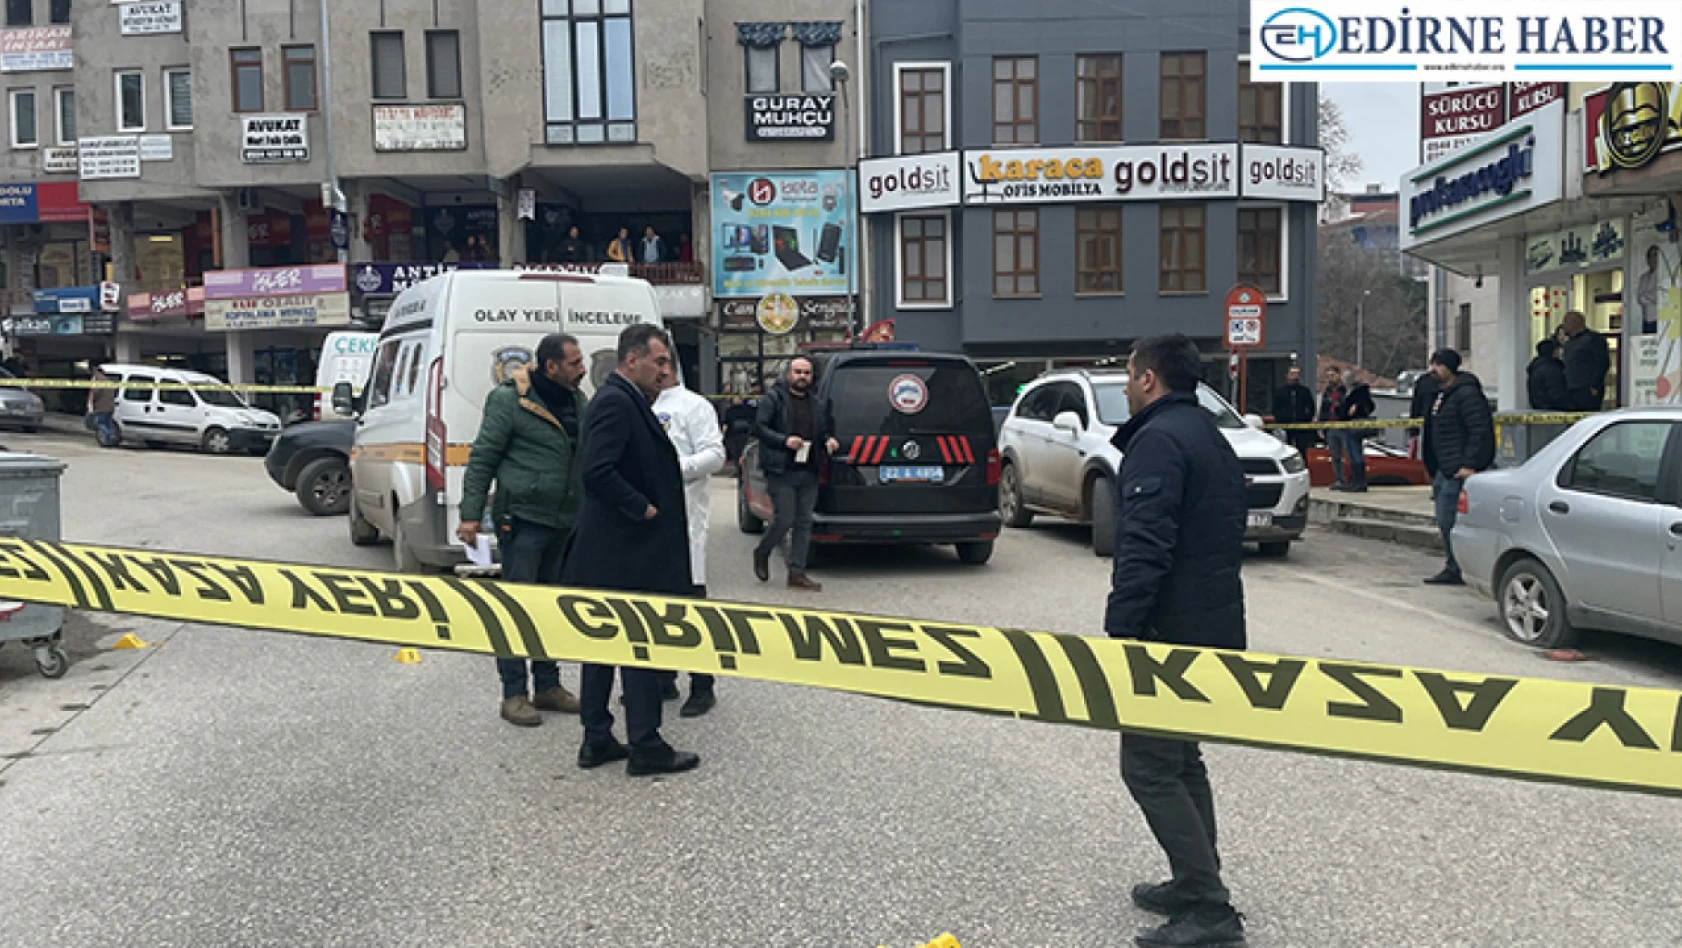 Edirne'deki silahlı kavgayla ilgili 3 kişi tutuklandı